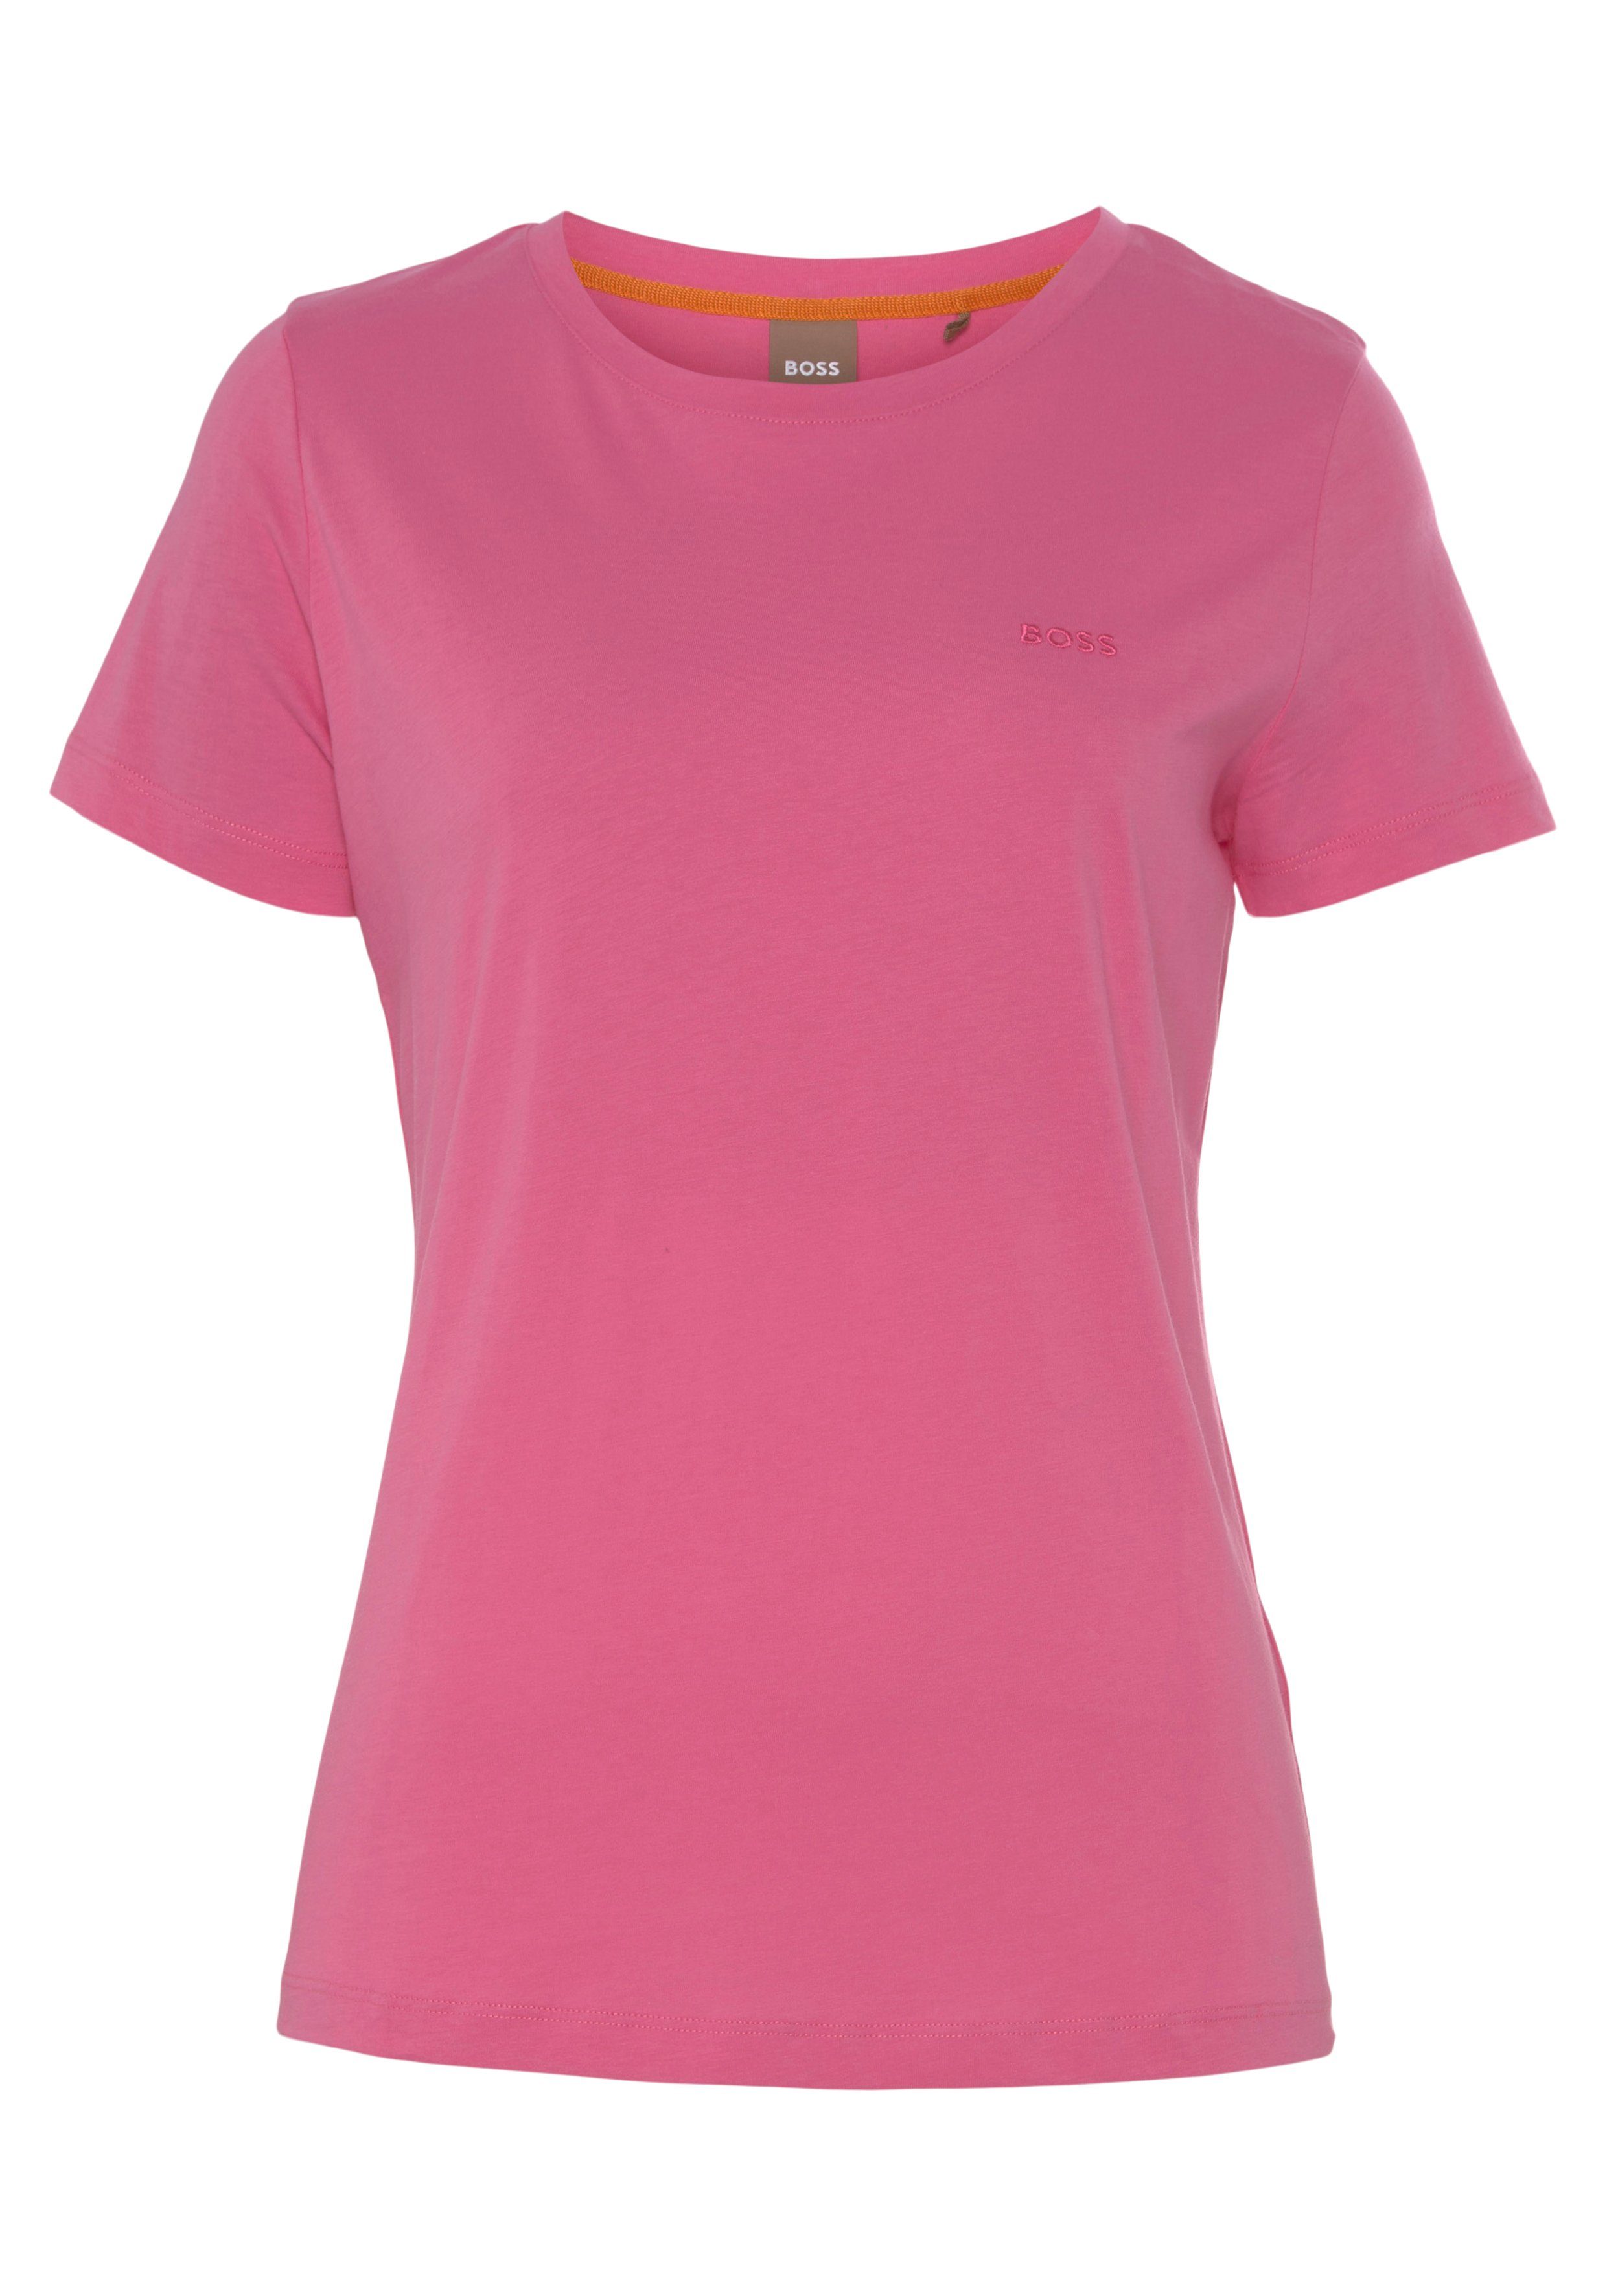 BOSS ORANGE Logostickerei, weicher, Qualität Stoff, hochwertiger T-Shirt Premium mit medium_pink1